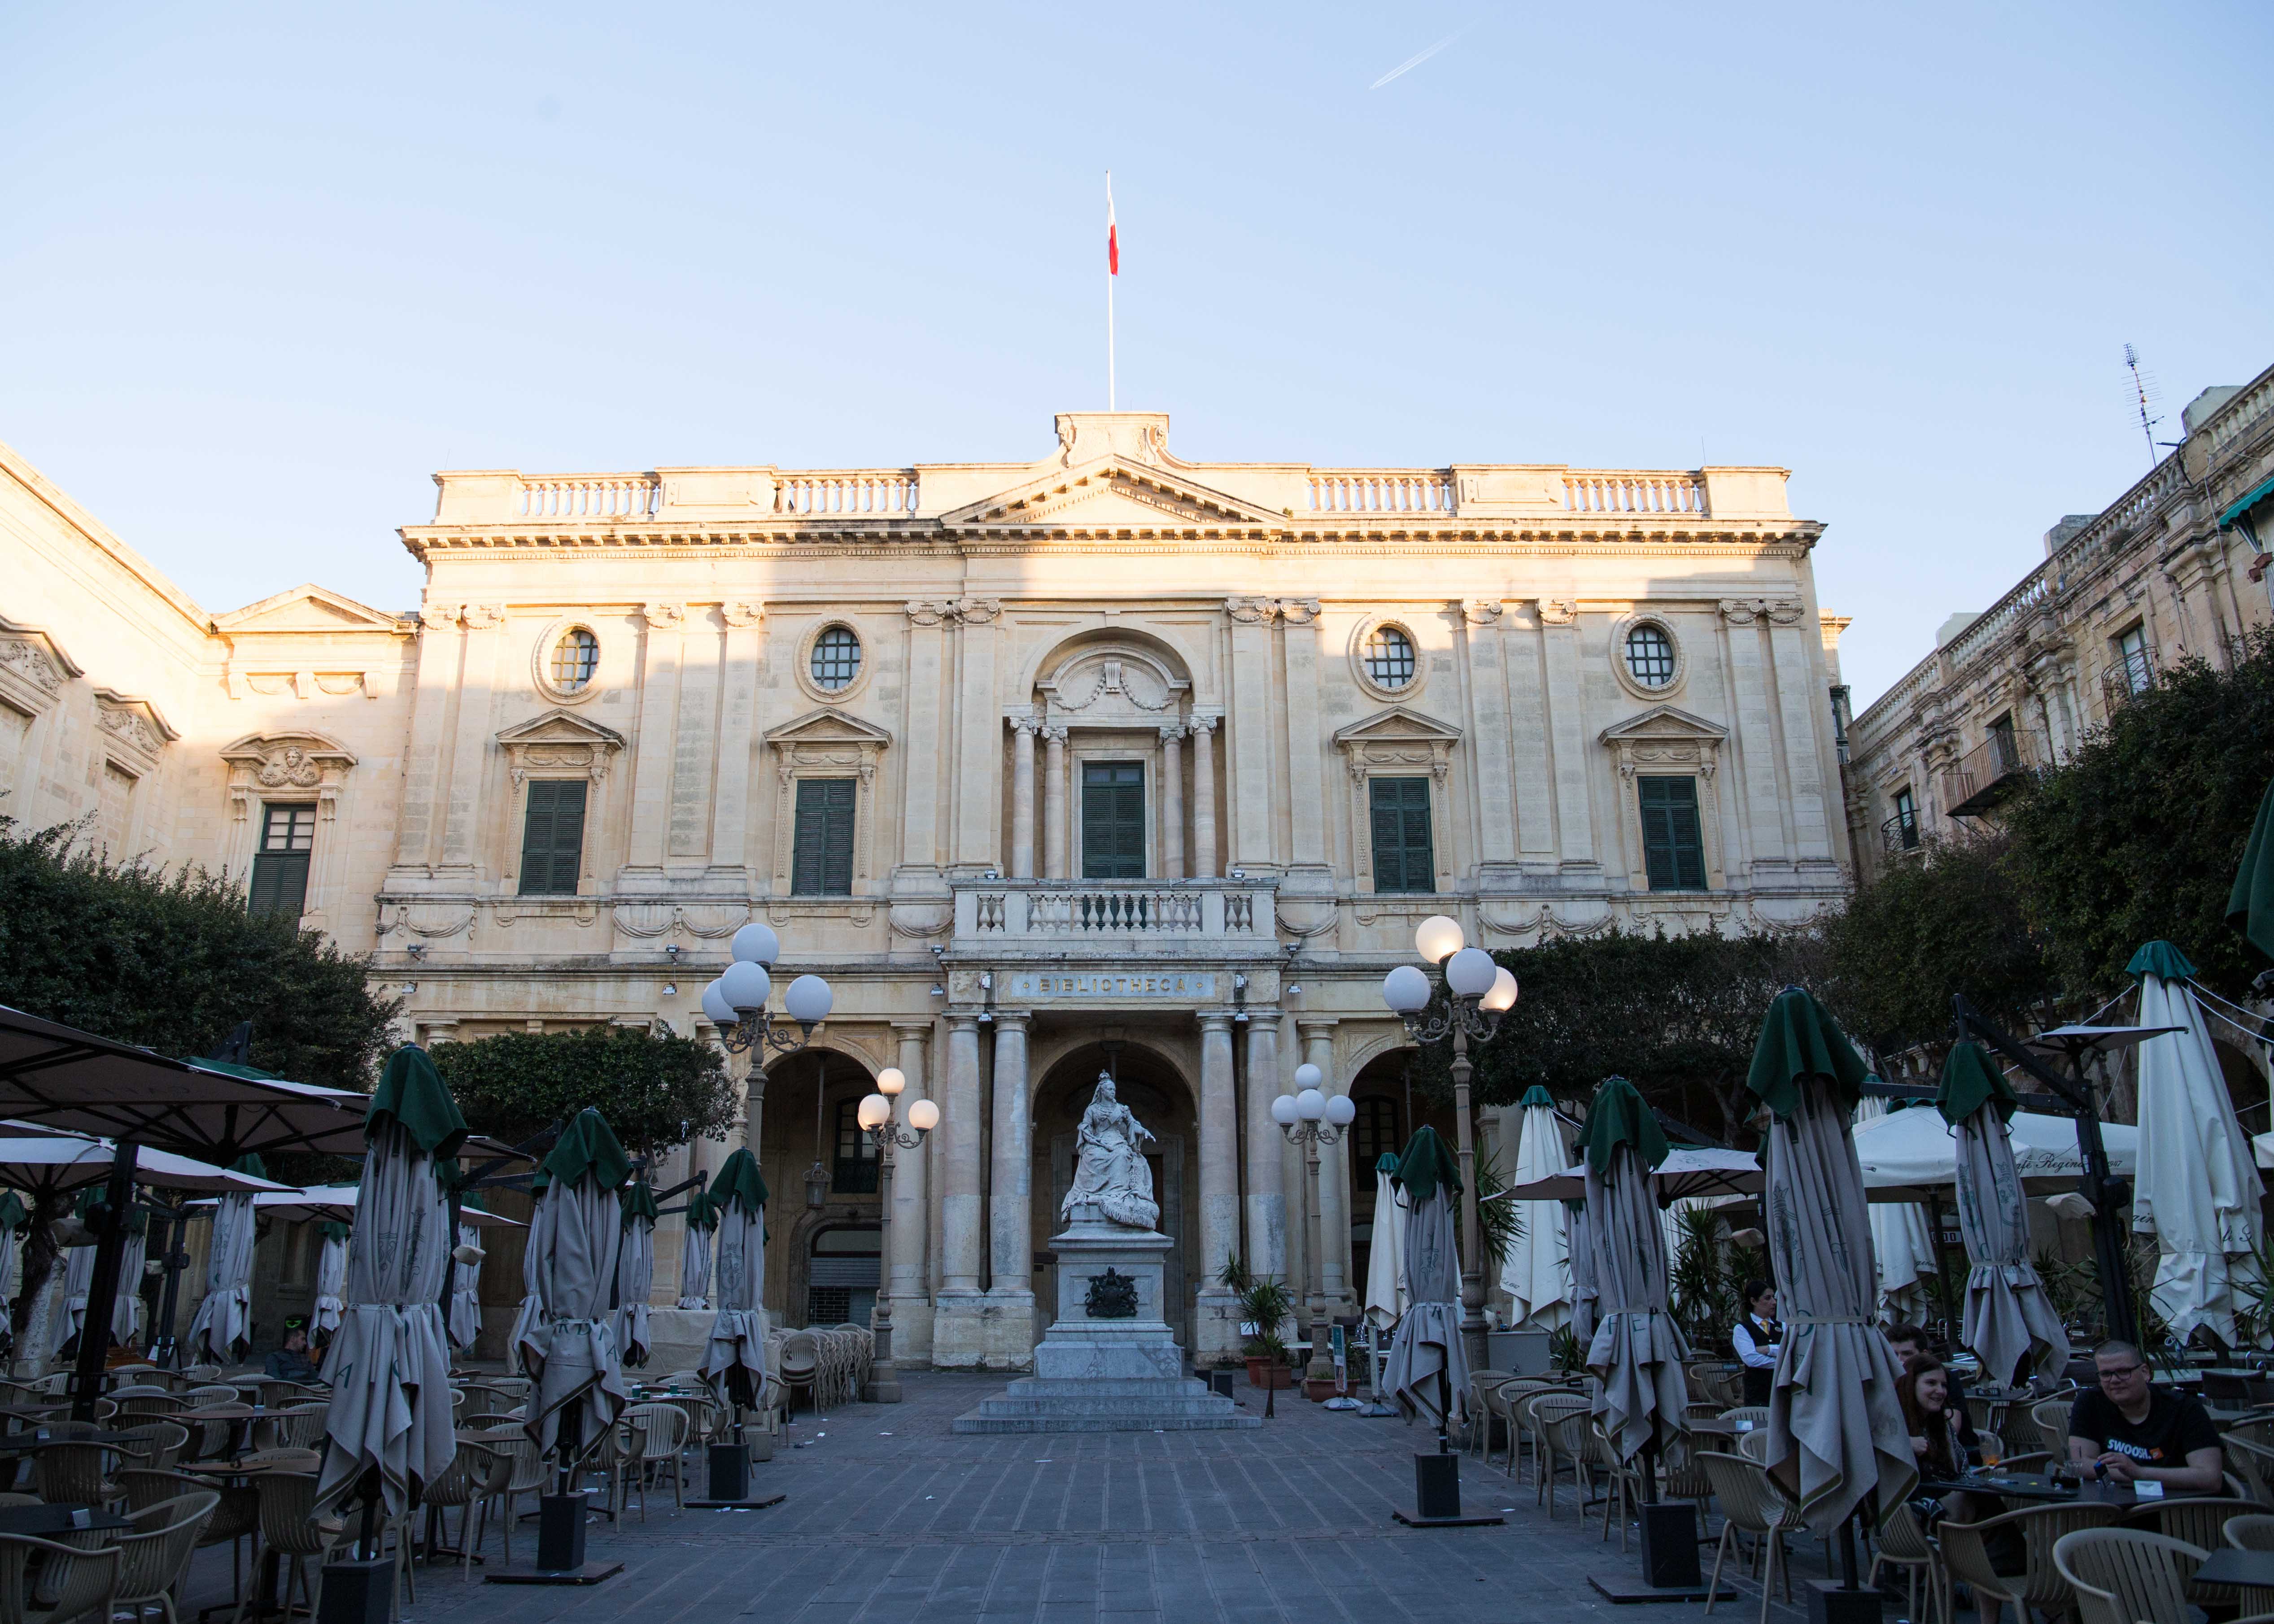 Where to visit in Valletta? Republic Square